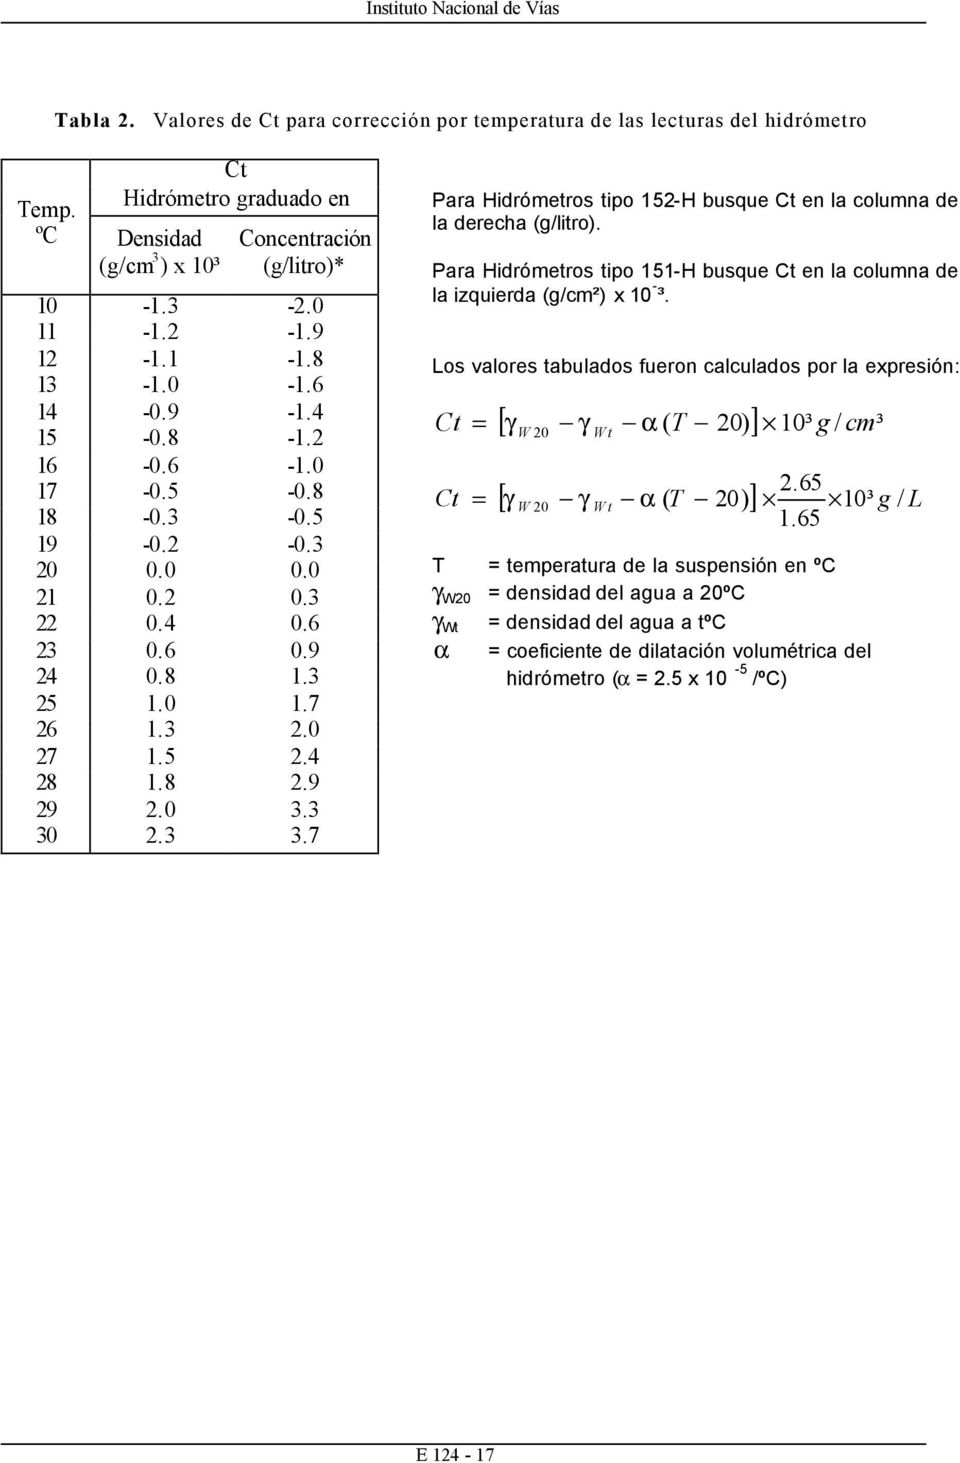 3 3.7 Para Hidrómetros tipo 152-H busque Ct en la columna de la derecha (g/litro). Para Hidrómetros tipo 151-H busque Ct en la columna de la izquierda (g/cm²) x 10 - ³.